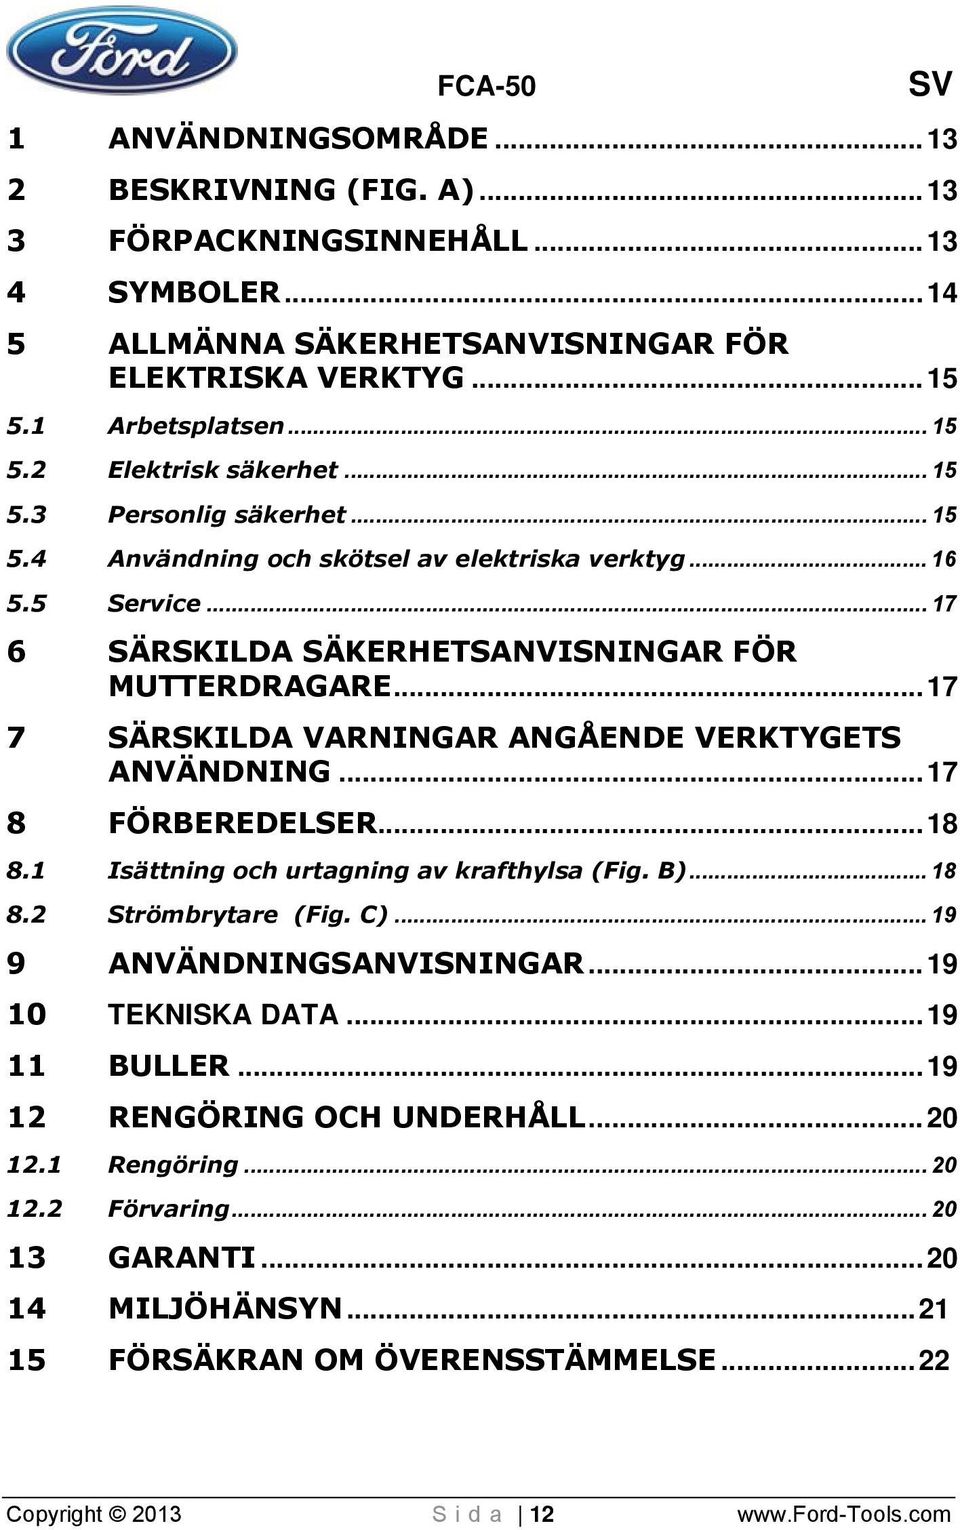 ..17 7 SÄRSKILDA VARNINGAR ANGÅENDE VERKTYGETS ANVÄNDNING...17 8 FÖRBEREDELSER...18 8.1 Isättning och urtagning av krafthylsa (Fig. B)... 1 8 8.2 Strömbrytare (Fig. C)... 1 9 9 ANVÄNDNINGSANVISNINGAR.